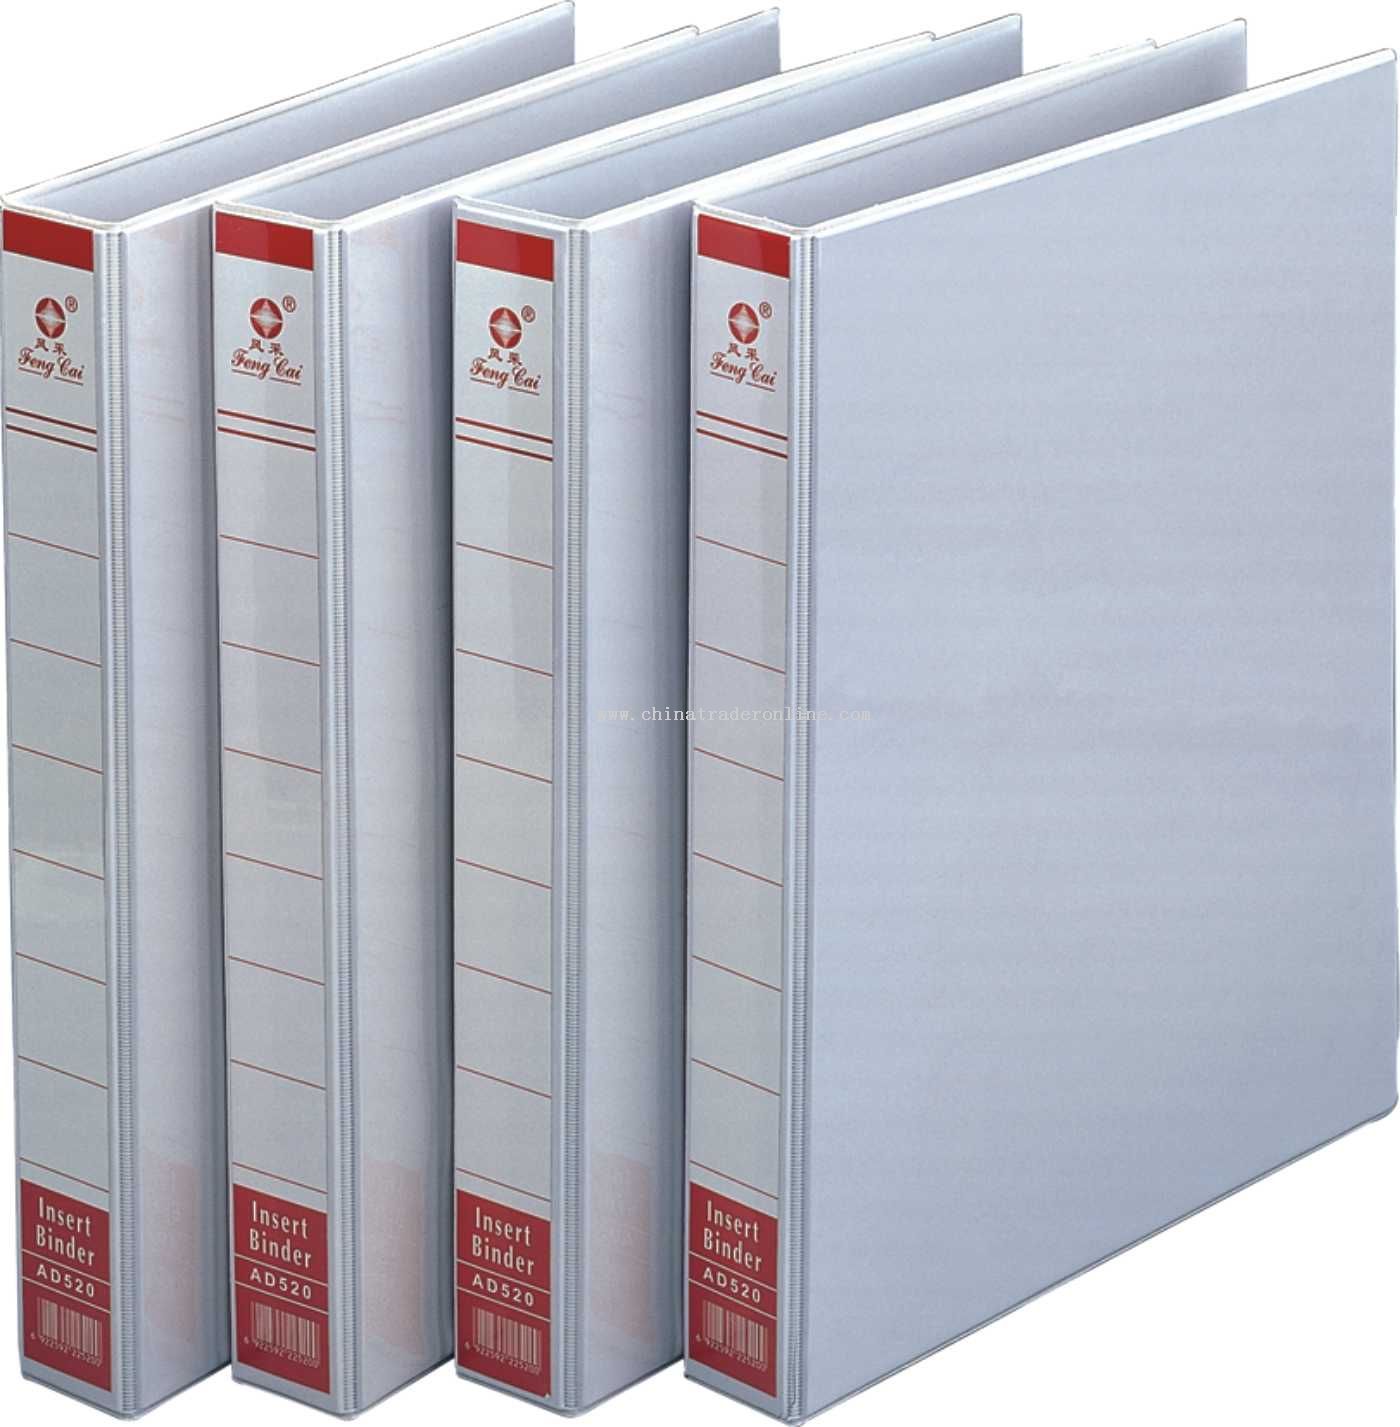 File folder ( 35mm width ridge )